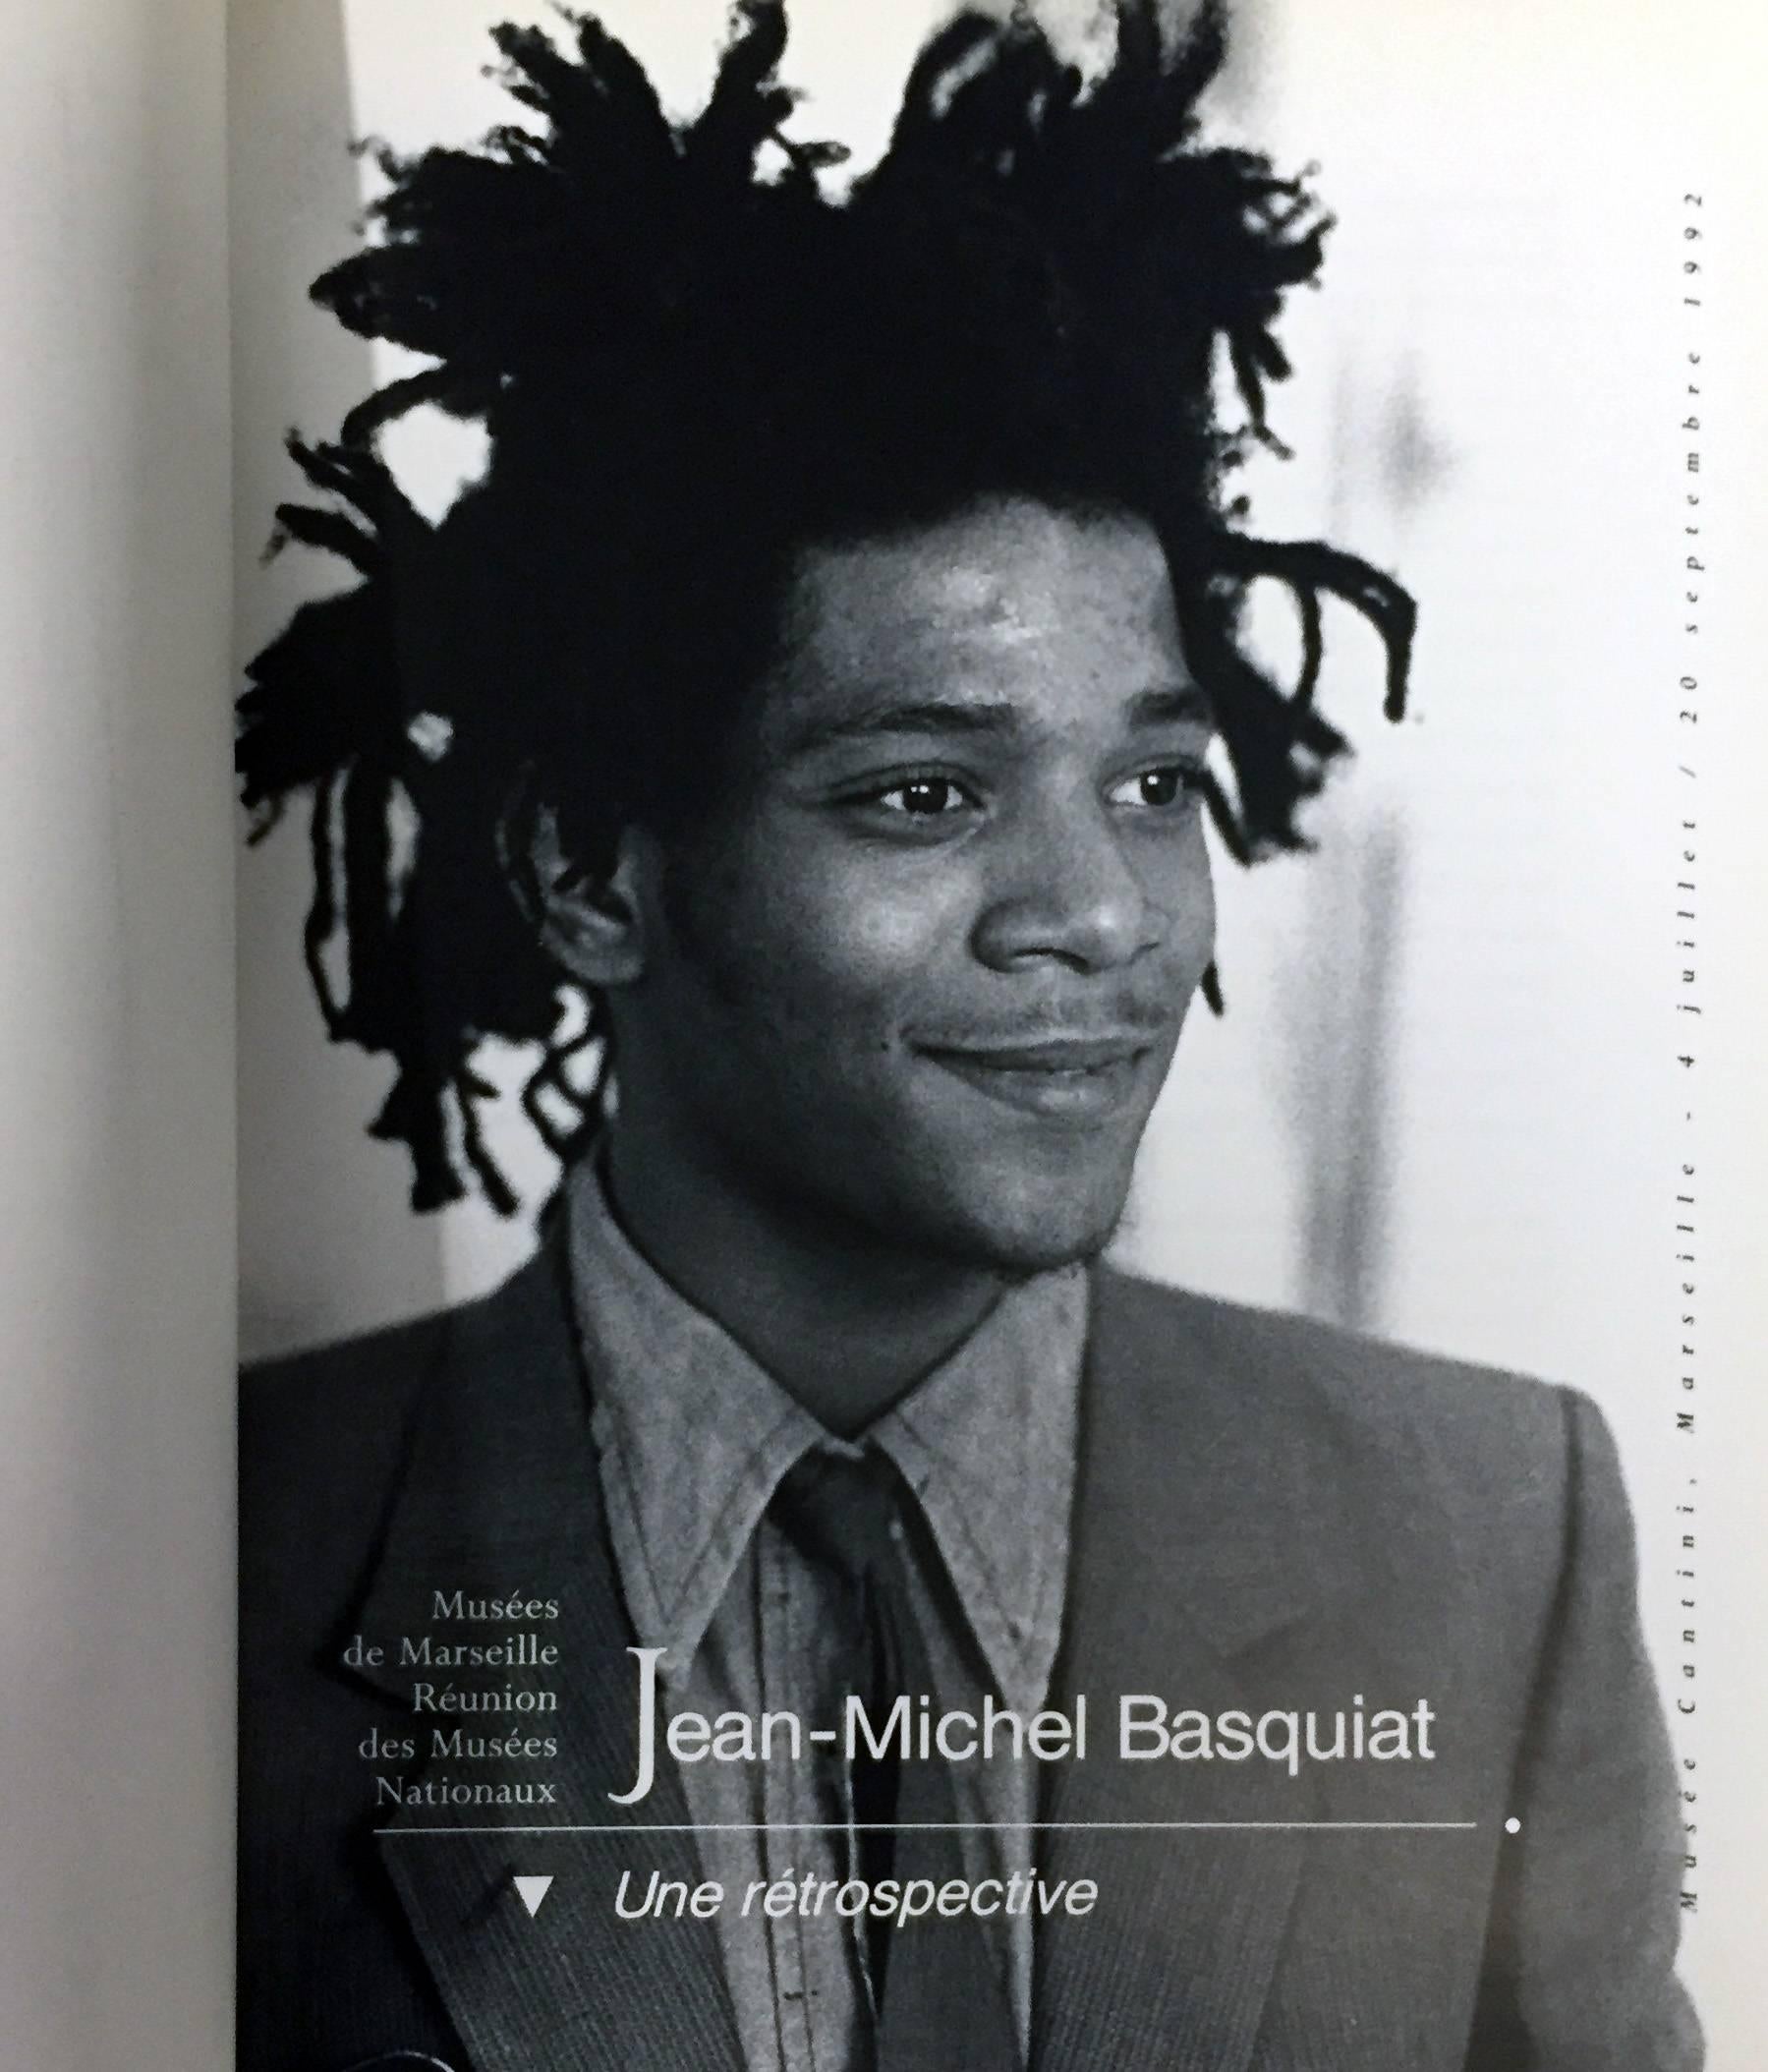 Basquiat Marseille exhibition catalog - Pop Art Art by after Jean-Michel Basquiat